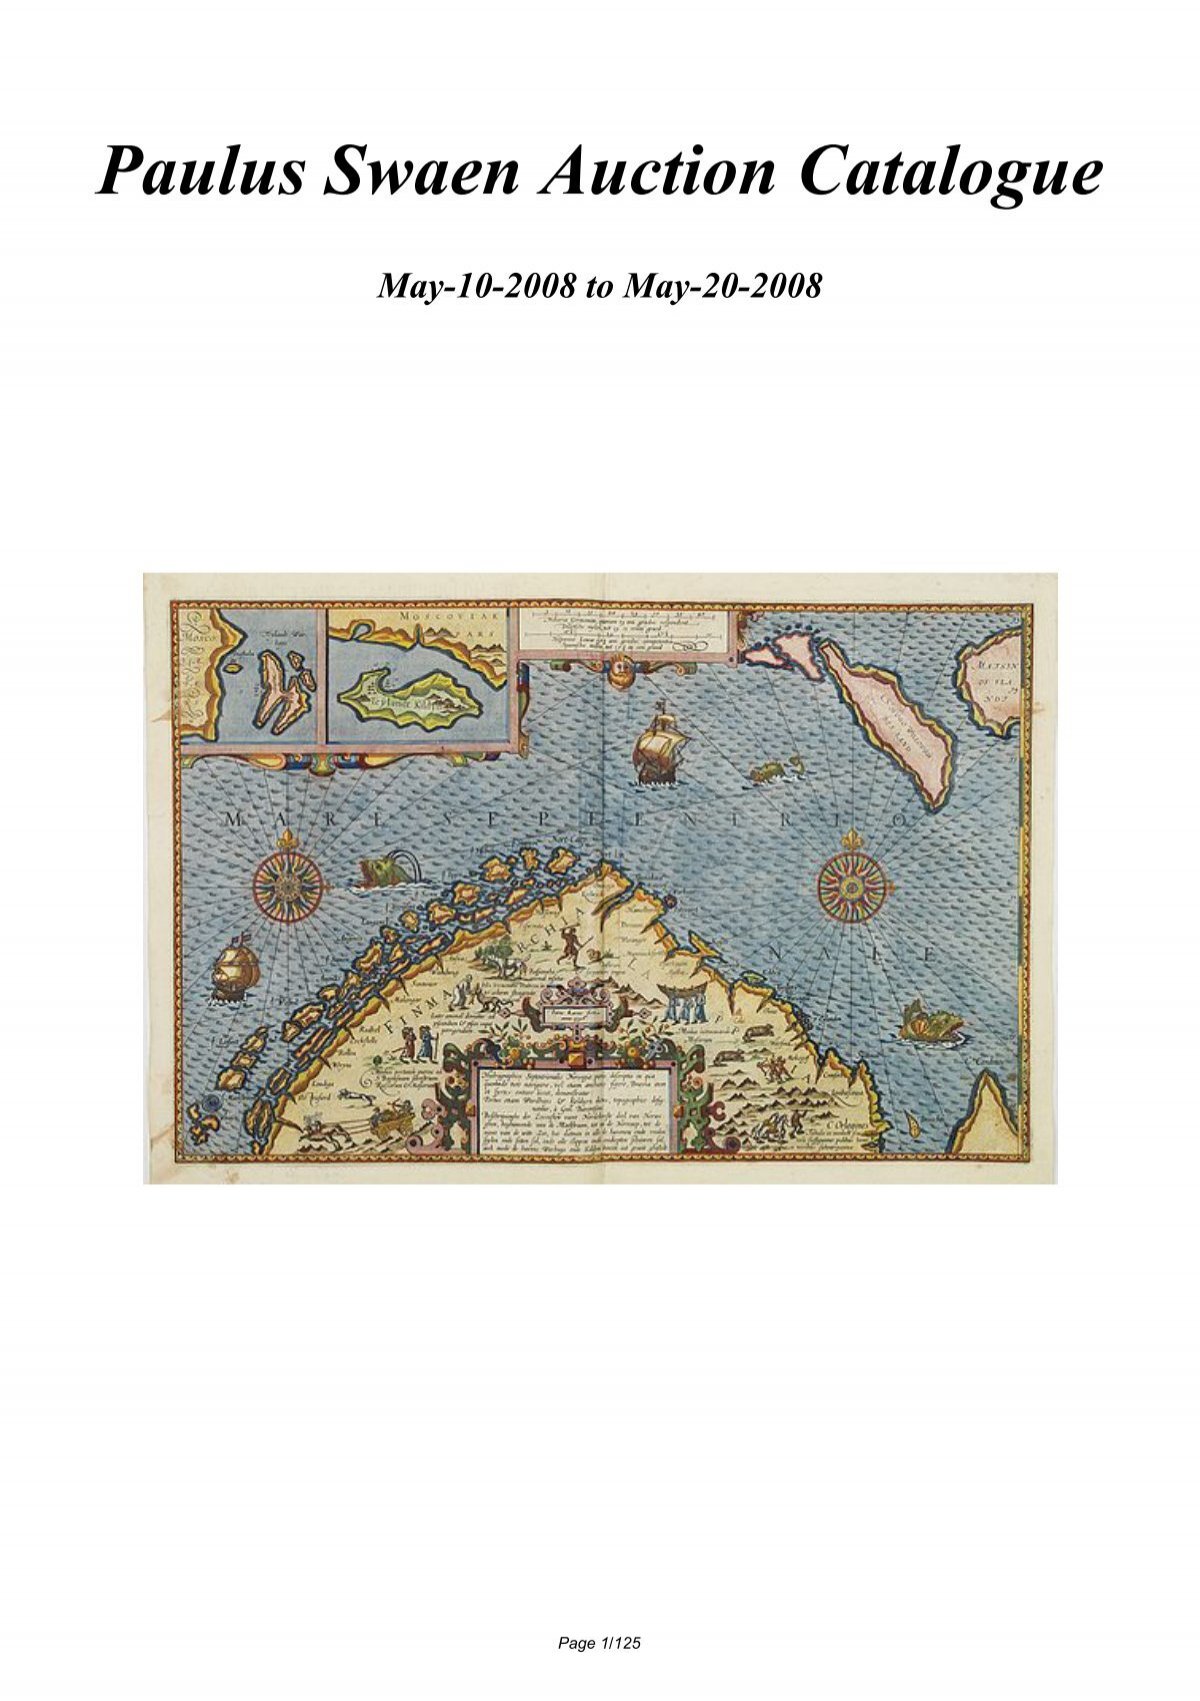 Le Monde (Mercator), Politique, 140 x 100 cm